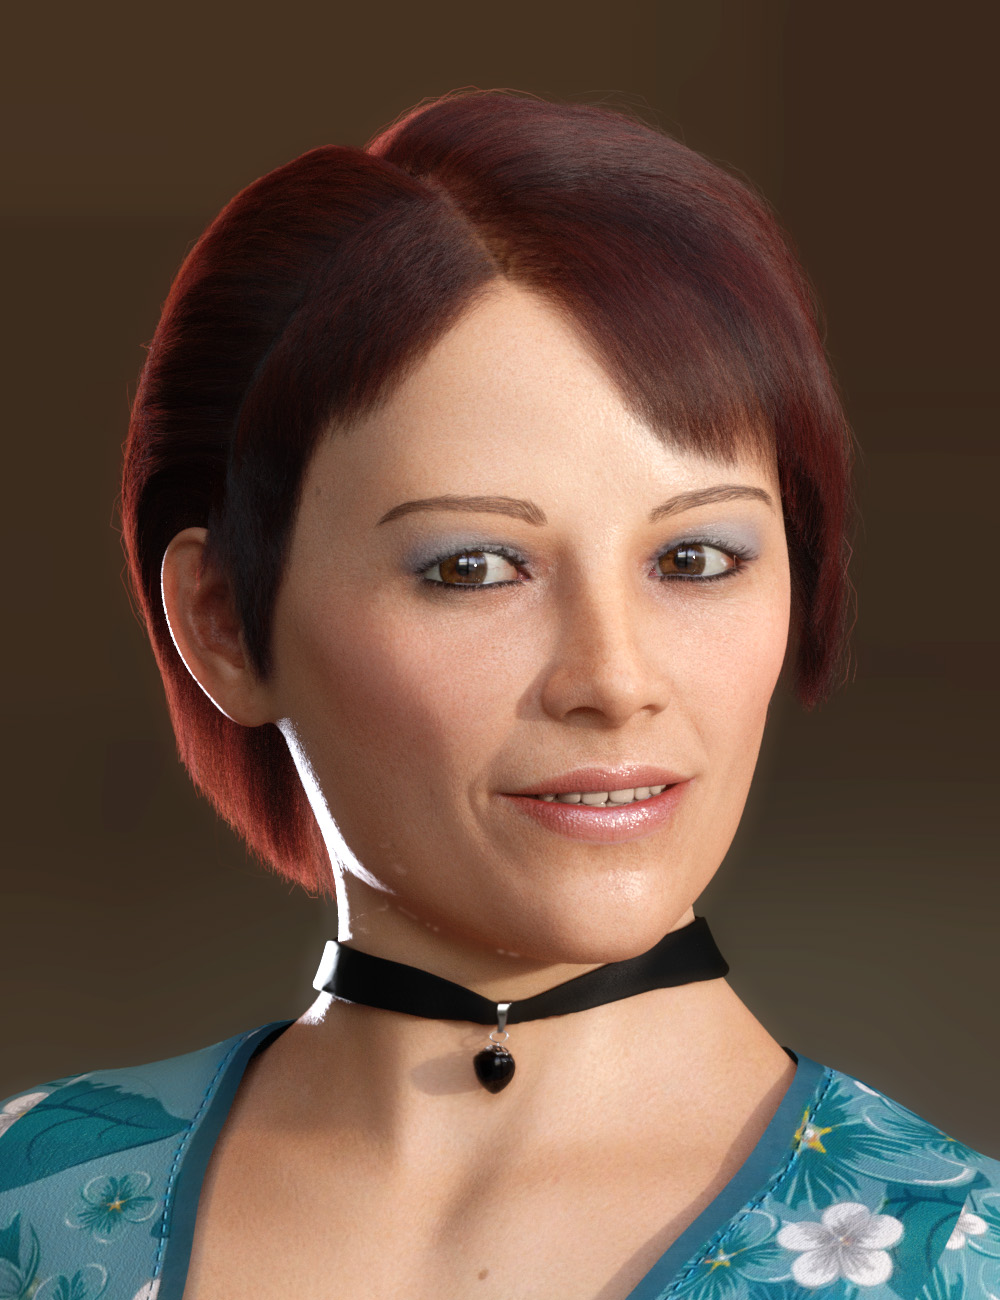 dForce Becs Hair for Genesis 8 Females by: PhilW, 3D Models by Daz 3D